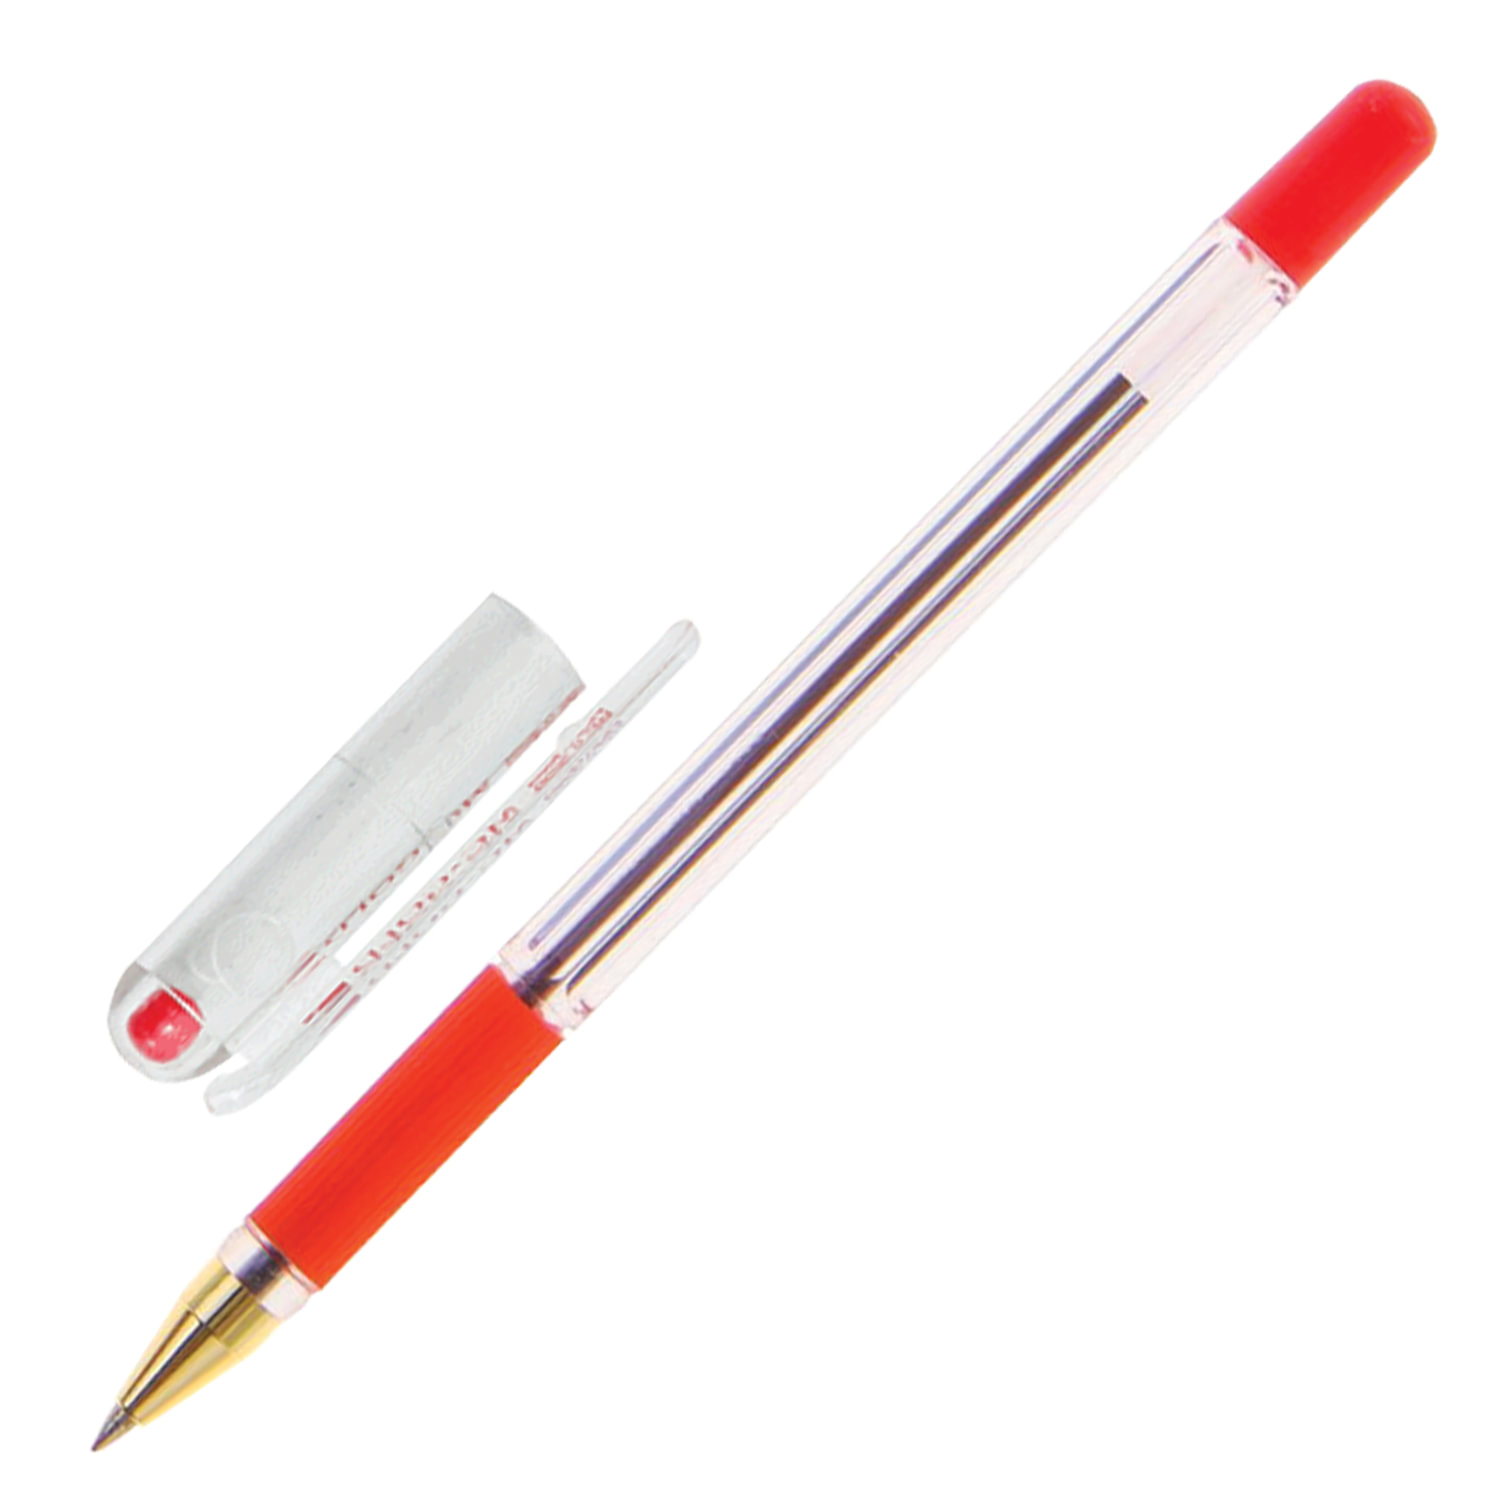 Ручка с прозрачным корпусом. Ручка шариковая масляная MUNHWA MC Gold. MUNHWA MC Gold ручка. MUNHWA ручка шариковая MC Gold, 0.3 мм. Ручка MUNHWA MC Gold 0.5.